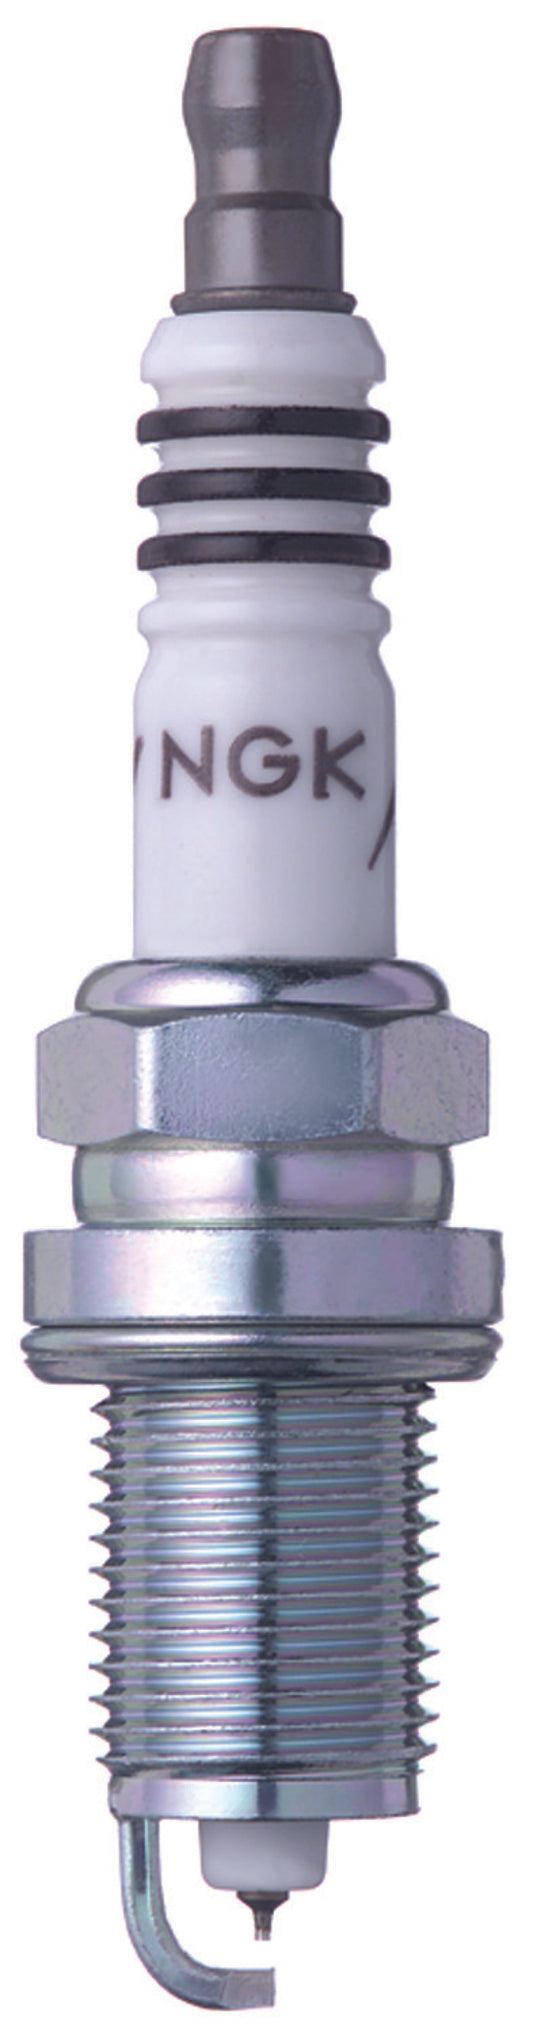 NGK Iridium Spark Plug Box of 4 (IZFR6F11)